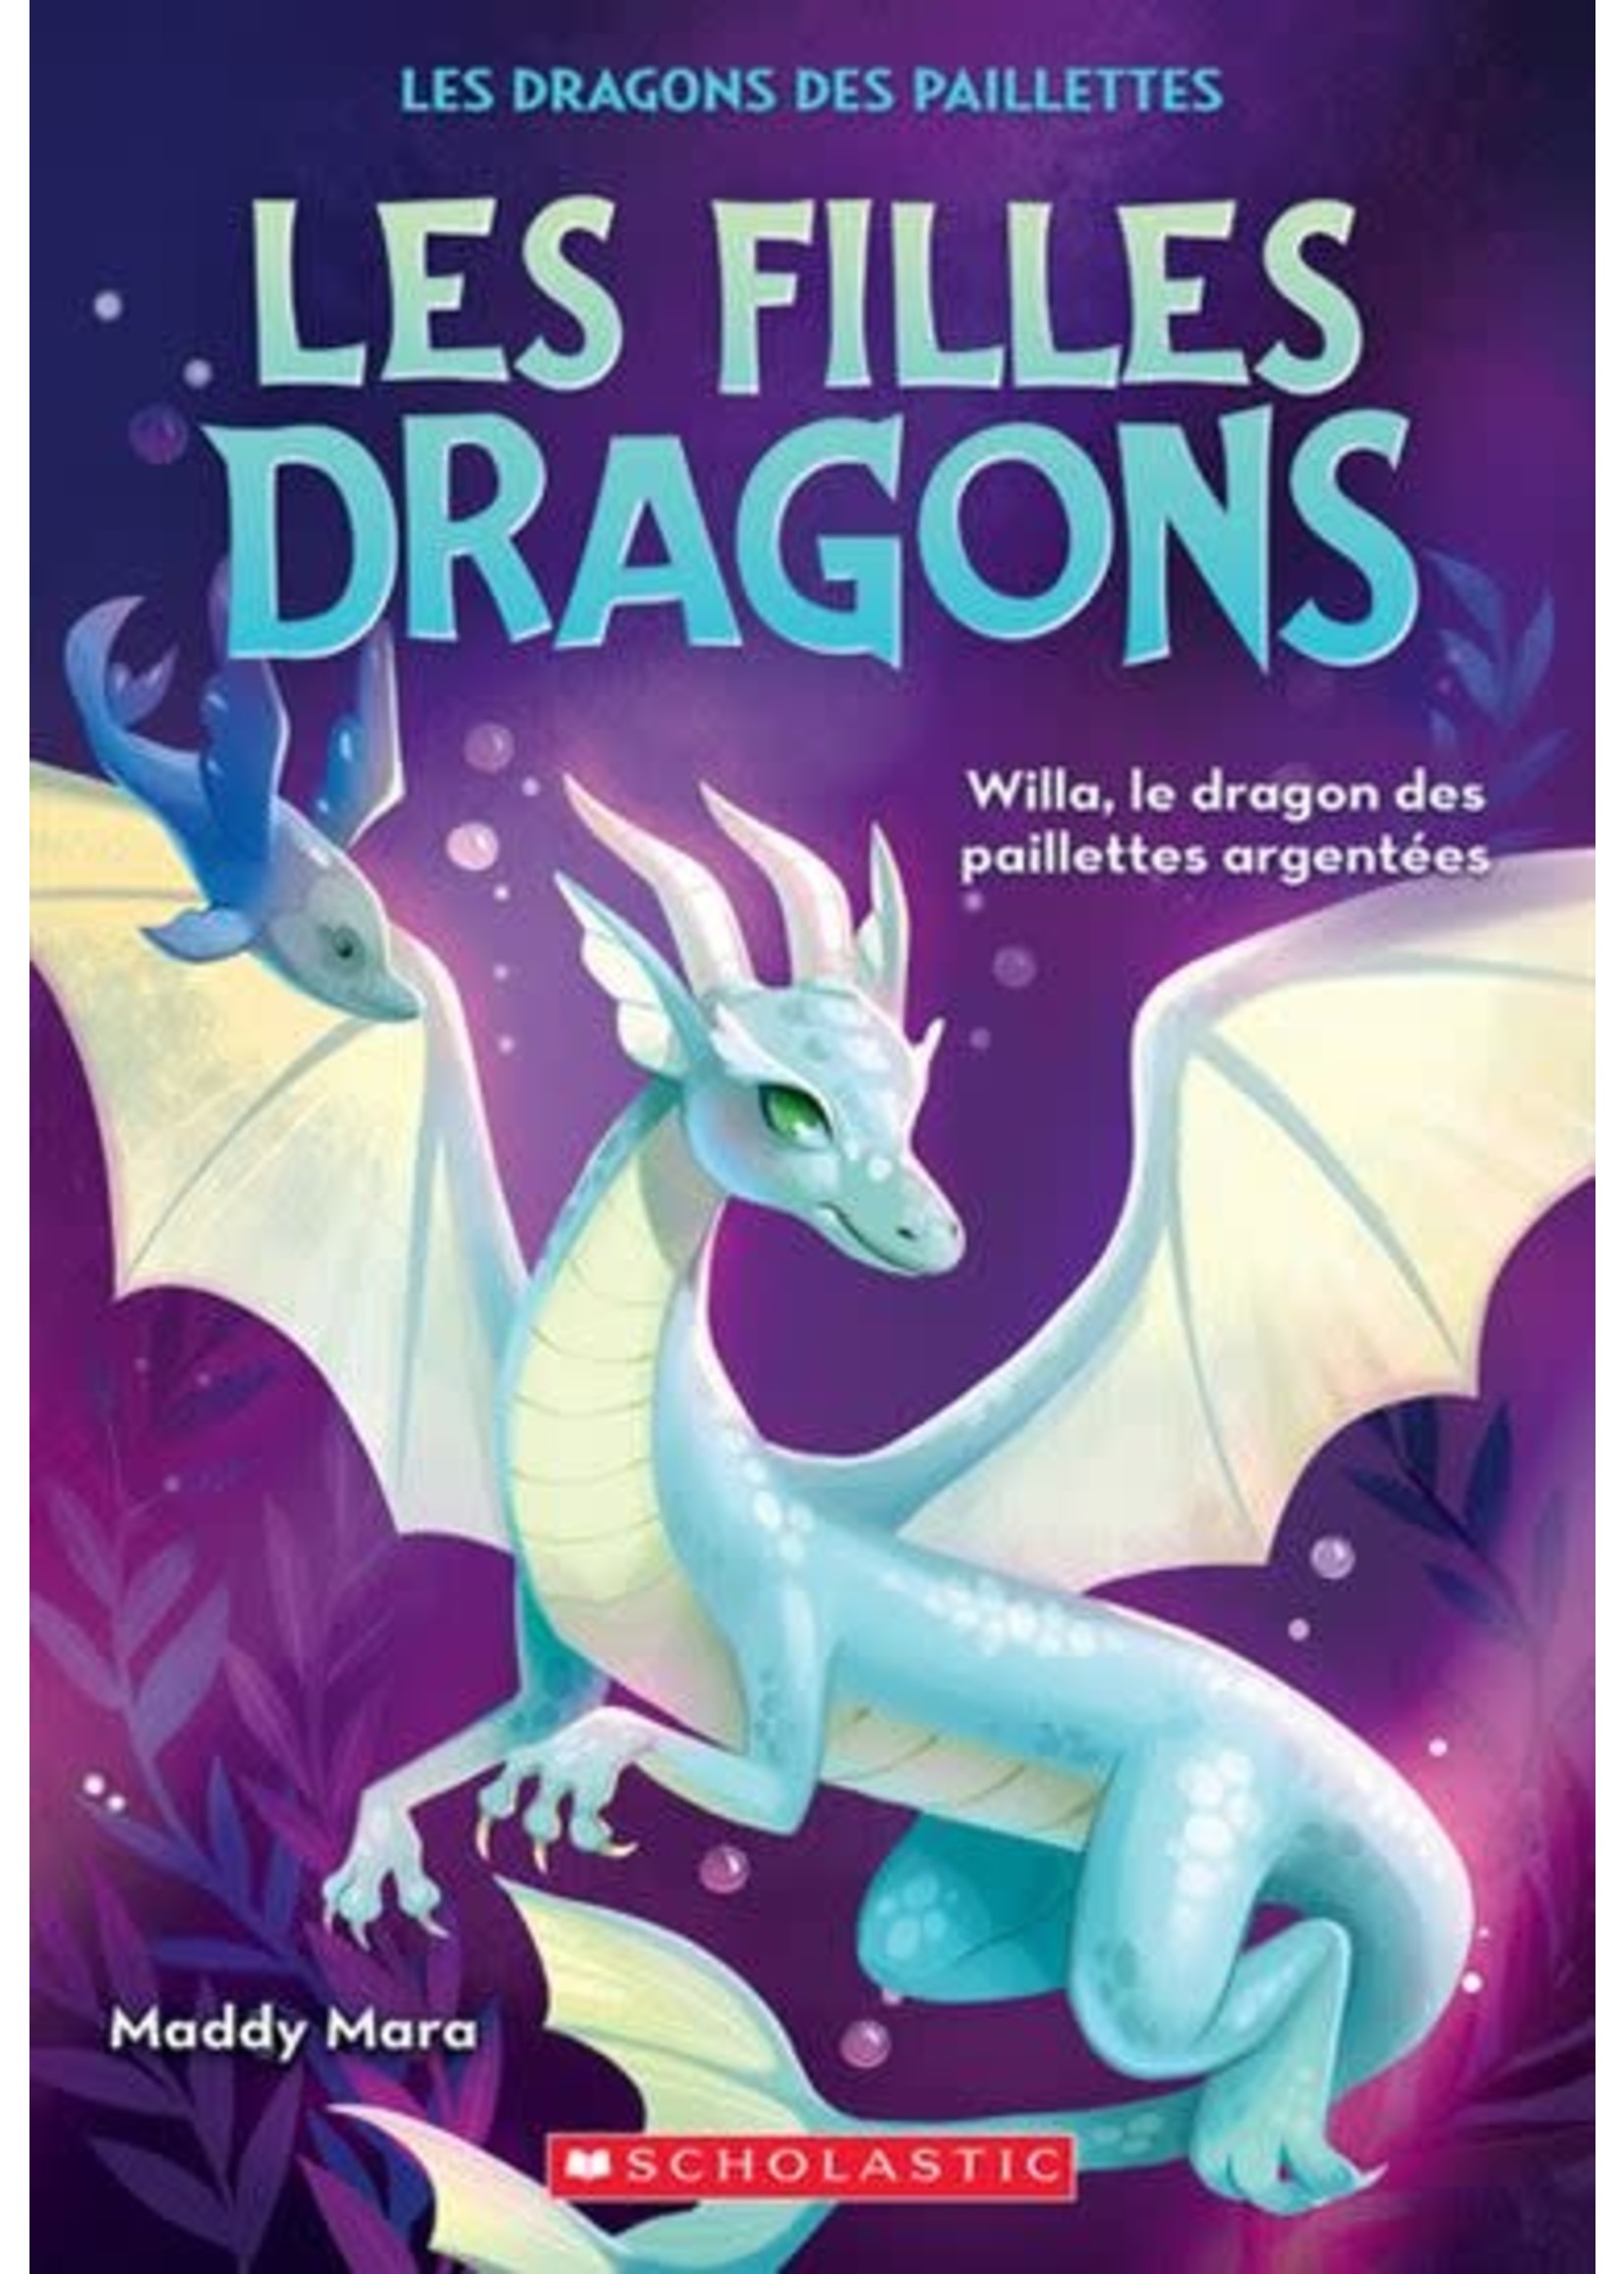 Willa, le dragon des paillettes argentées (Les filles dragons #02) De Maddy Mara